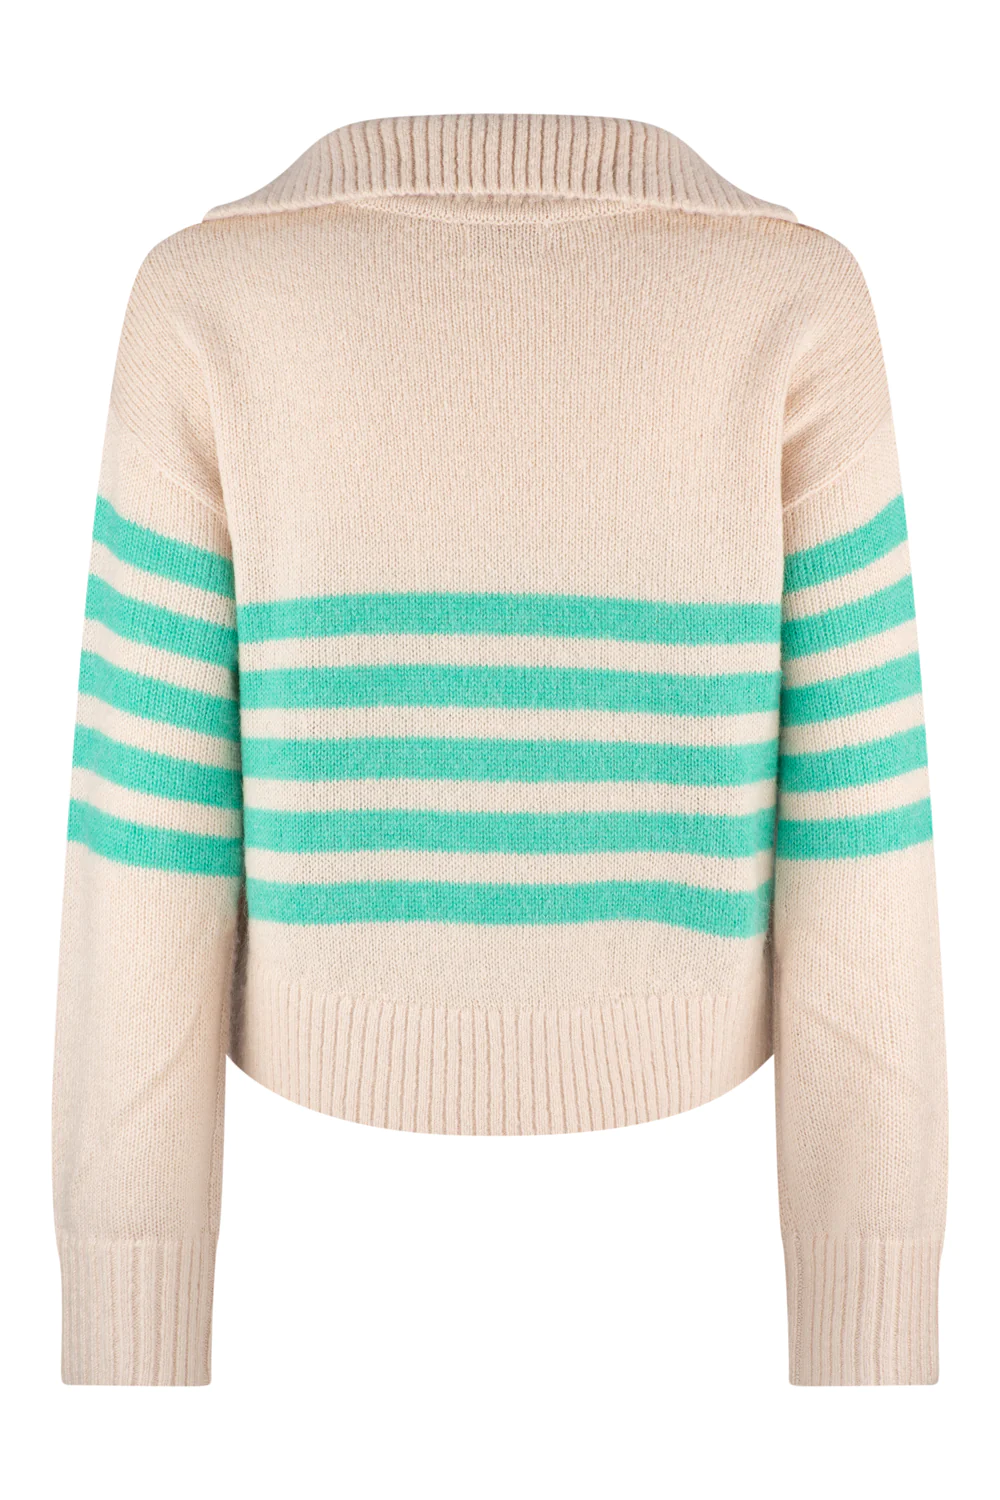 Clementina Sabel Sweater - Cream Multi